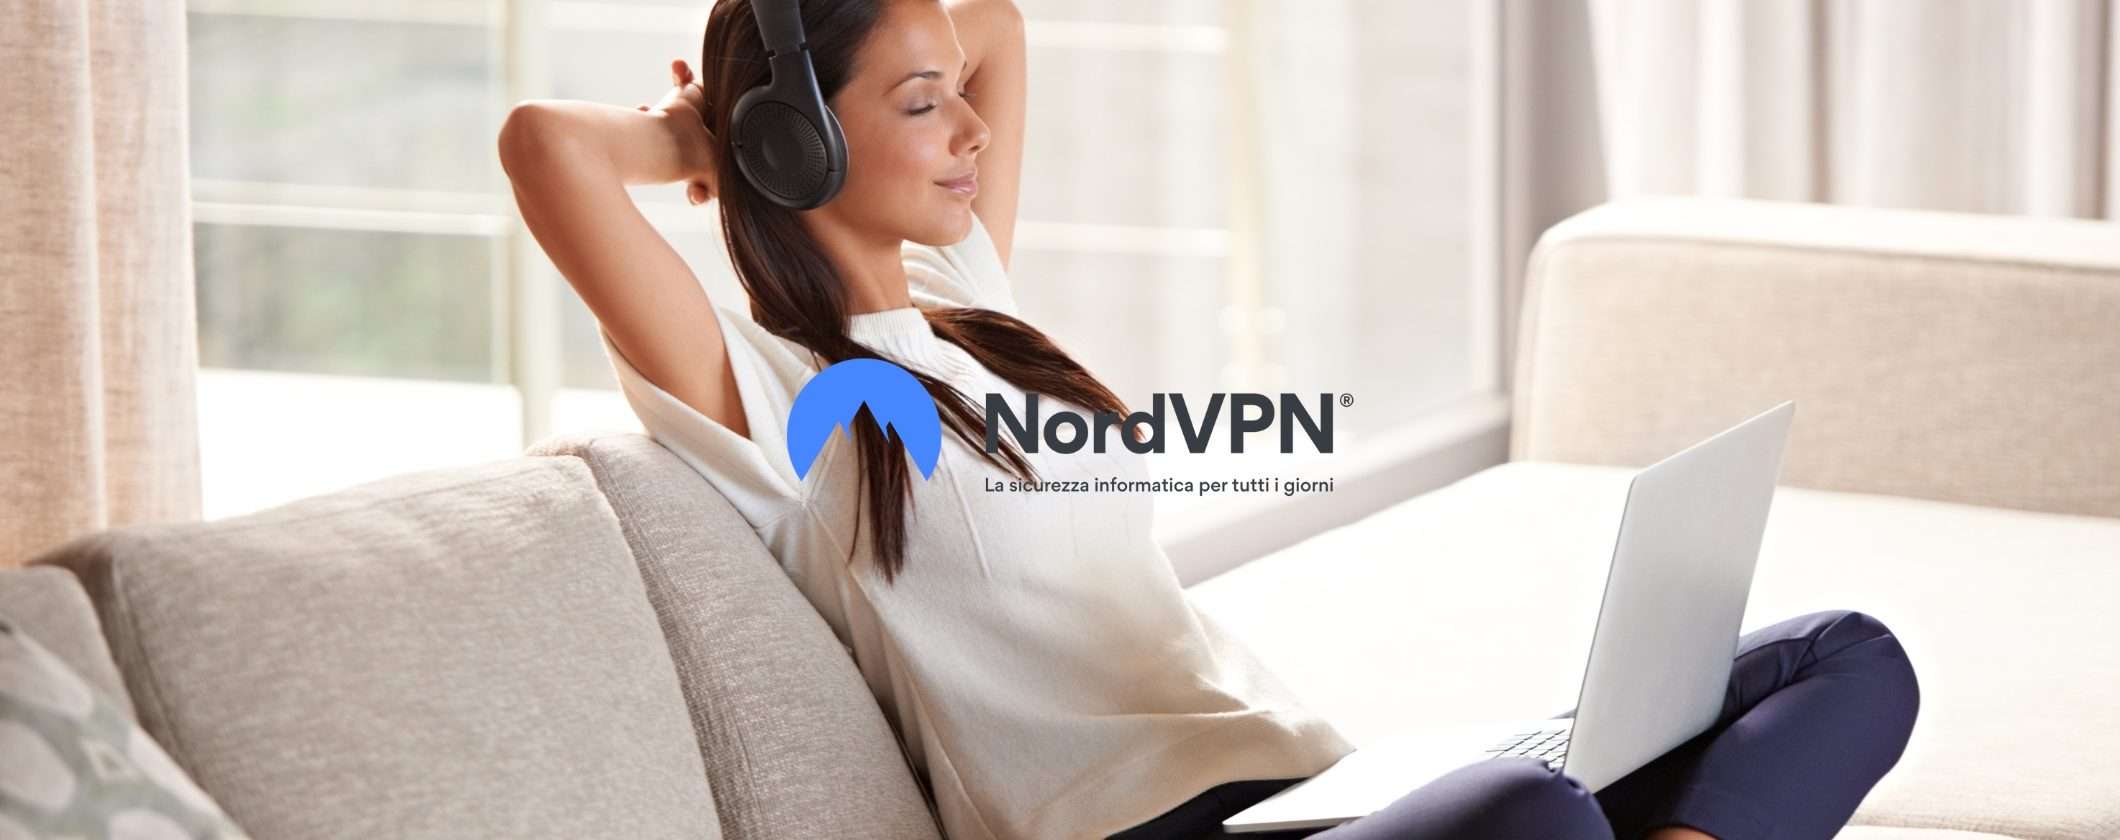 VPN sicura e no-log? La soluzione è NordVPN